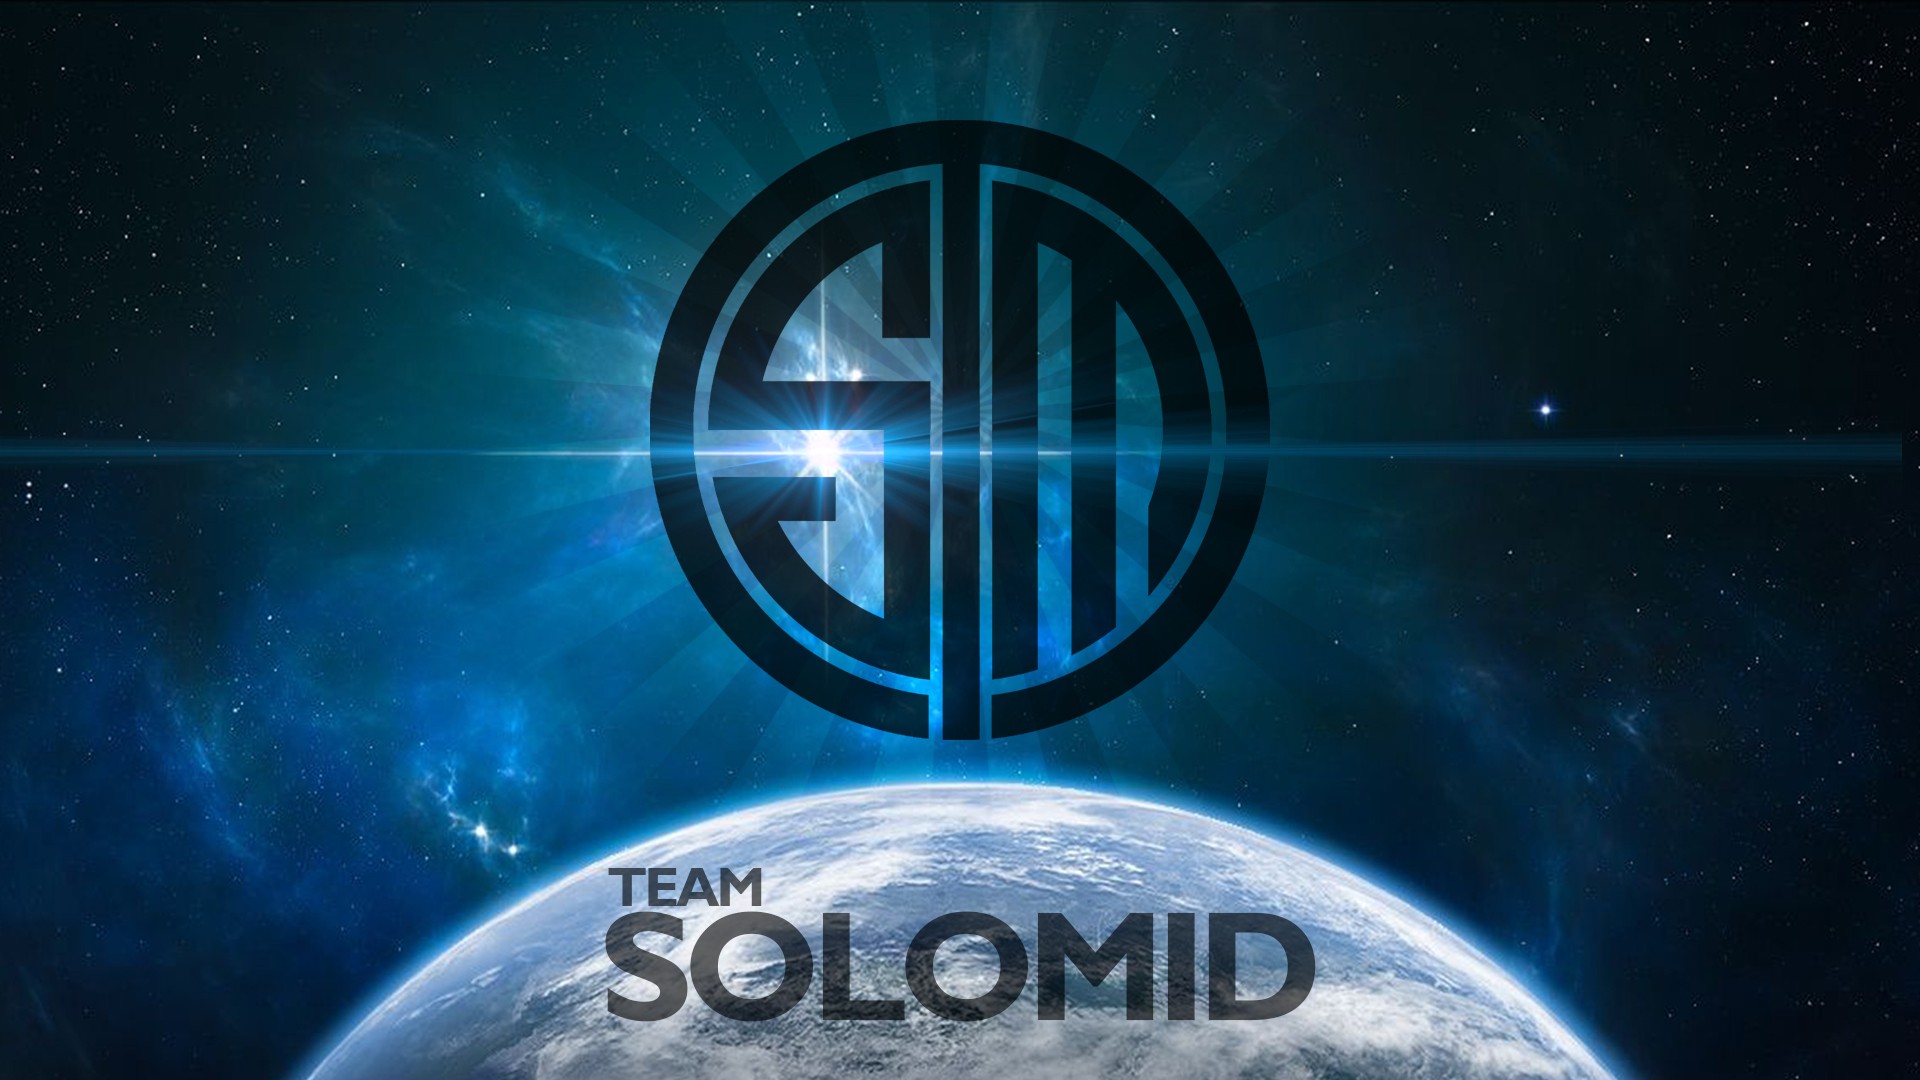 Team Solomid League Of Legends E Sports 1920x1080